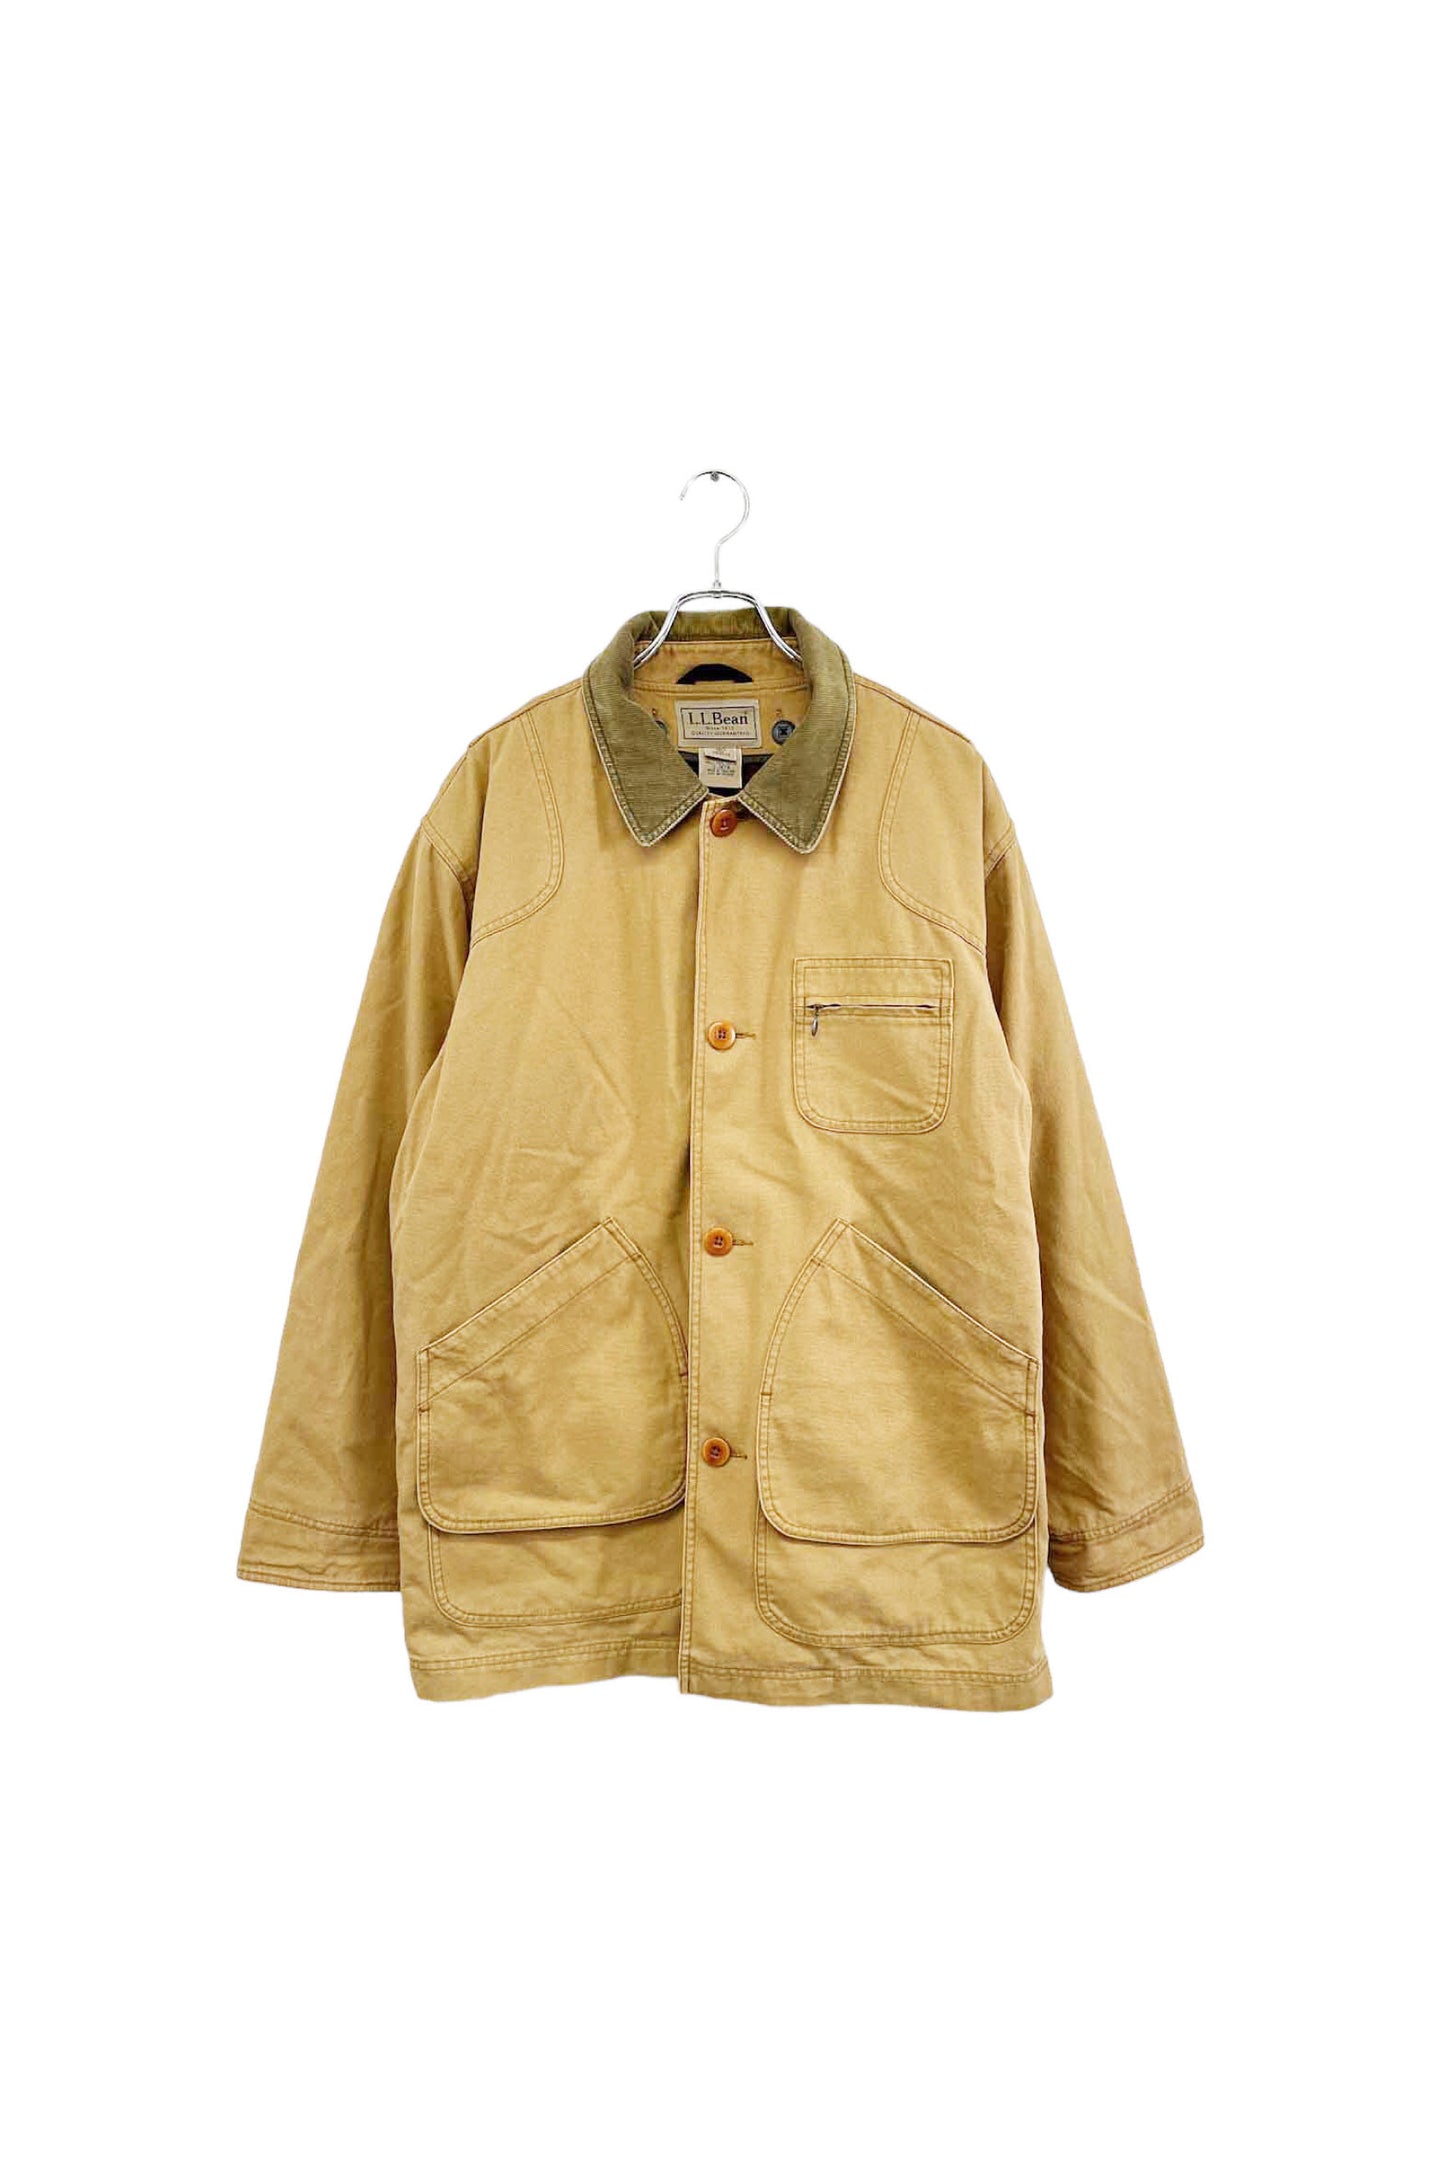 00‘s L.L.Bean hunting jacket